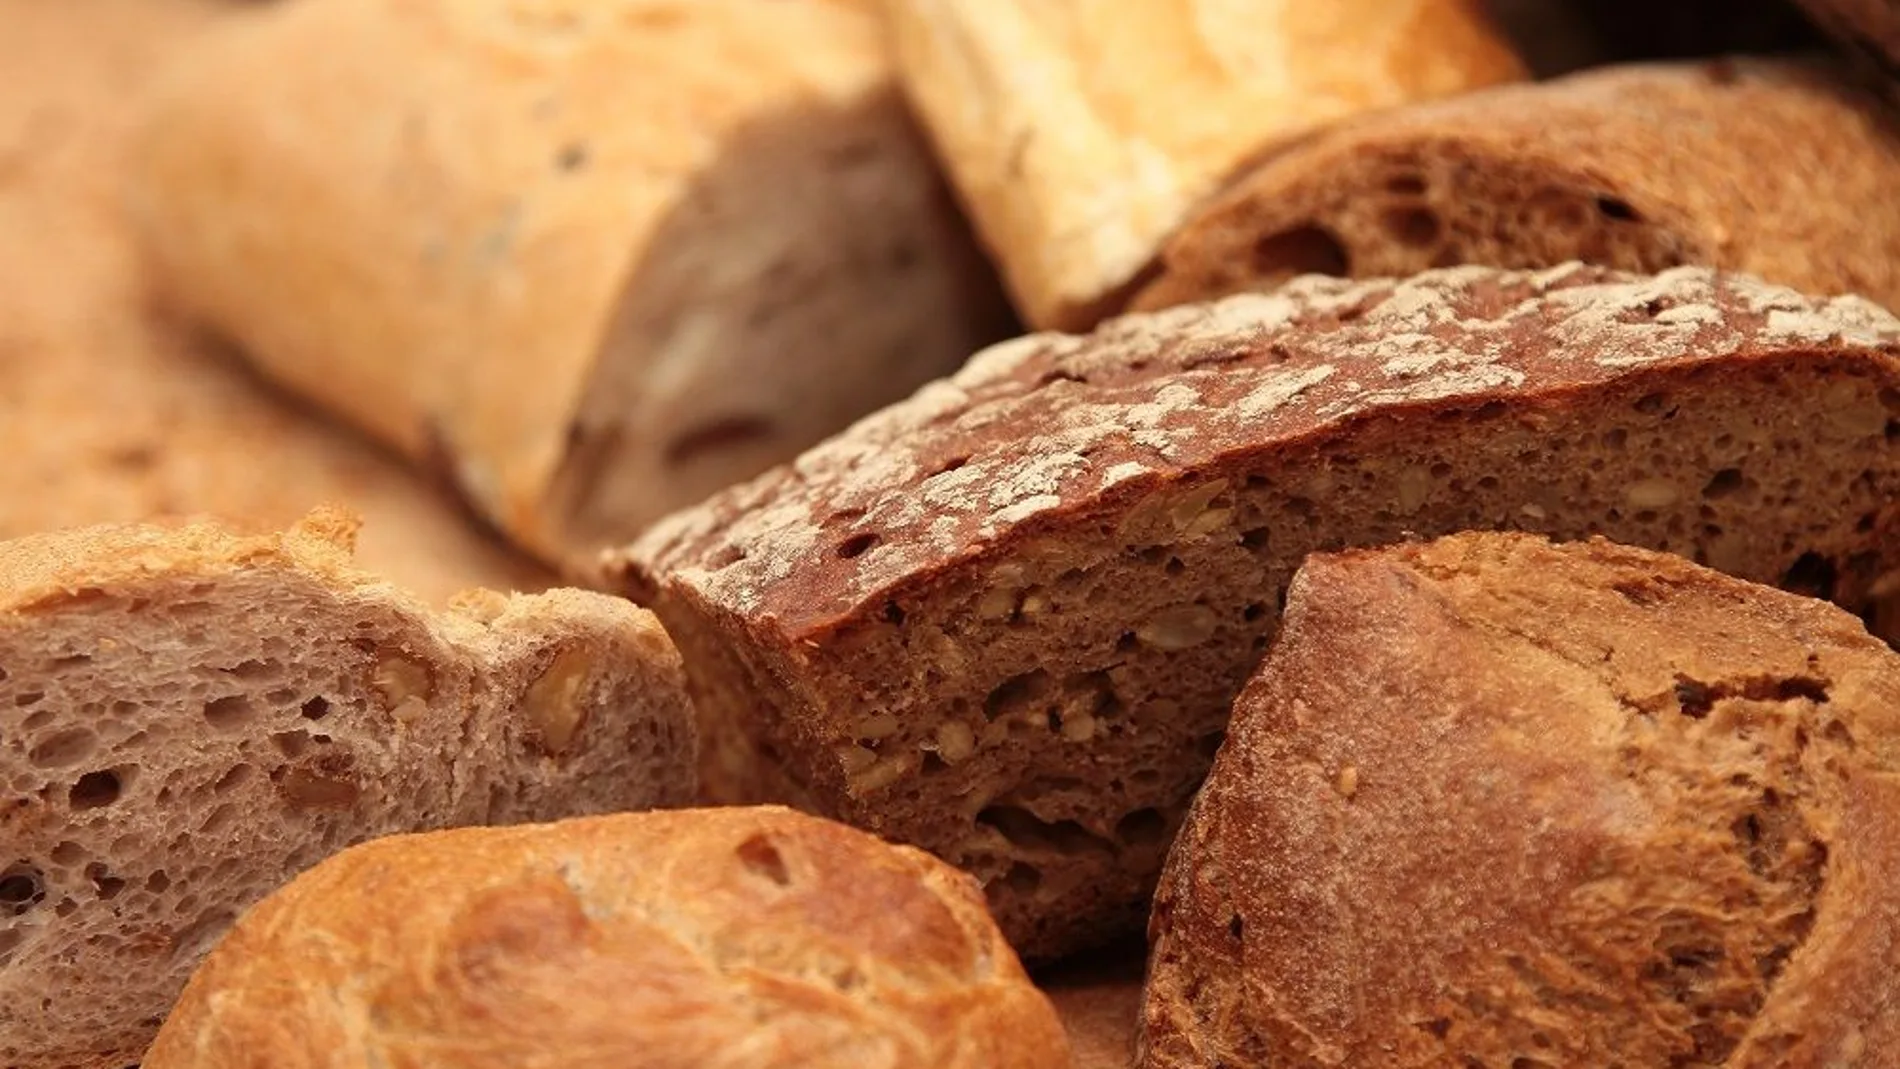 Con esta guía, aprenderás a preparar el pan casero más delicioso